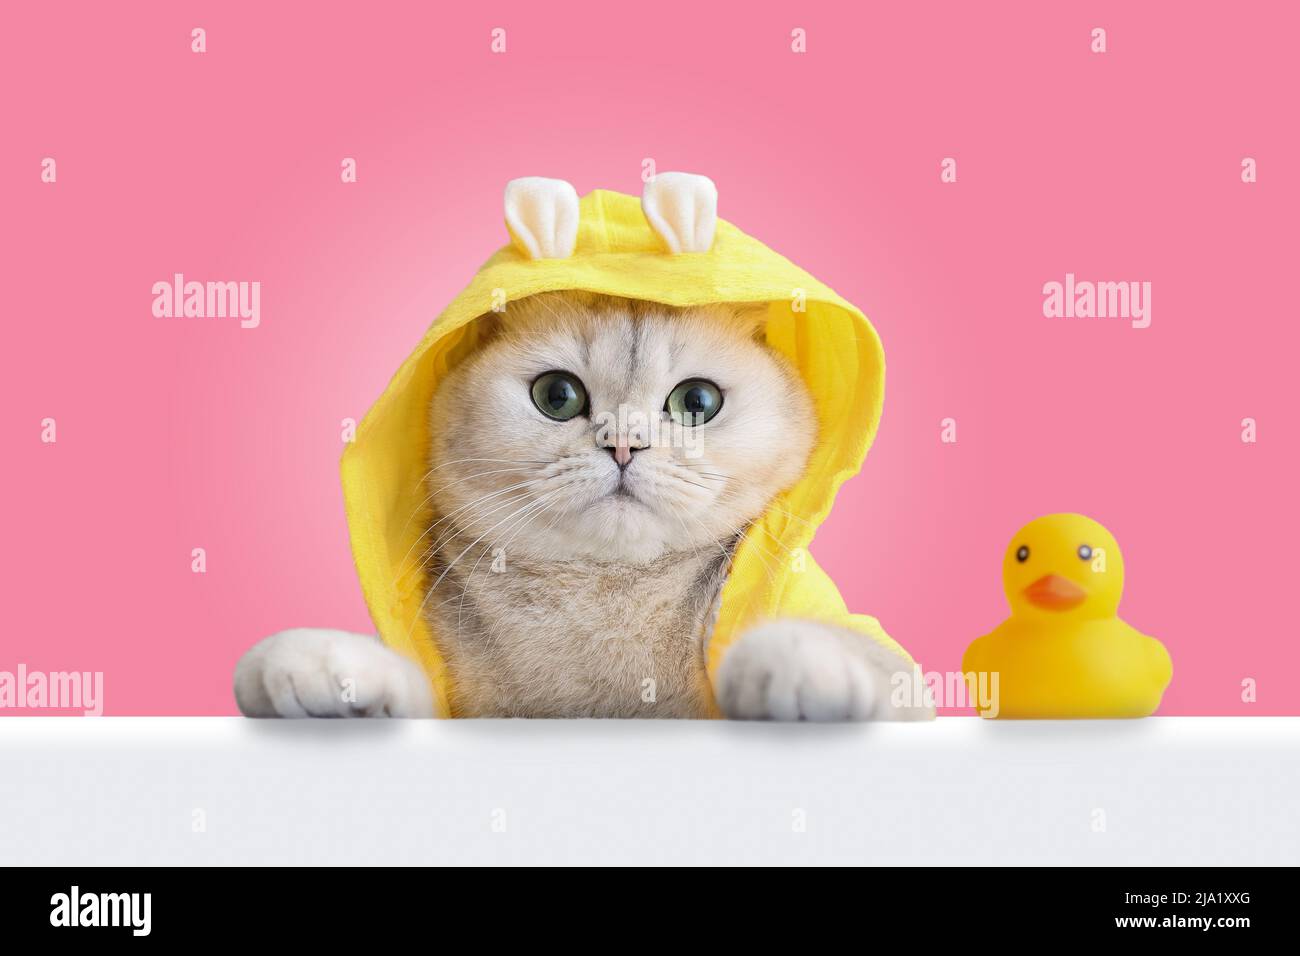 Un divertente gatto bianco in un cappotto giallo si affaccia su un guscio bianco, un'anatra gialla in gomma si trova nelle vicinanze, su uno sfondo rosa. Foto Stock